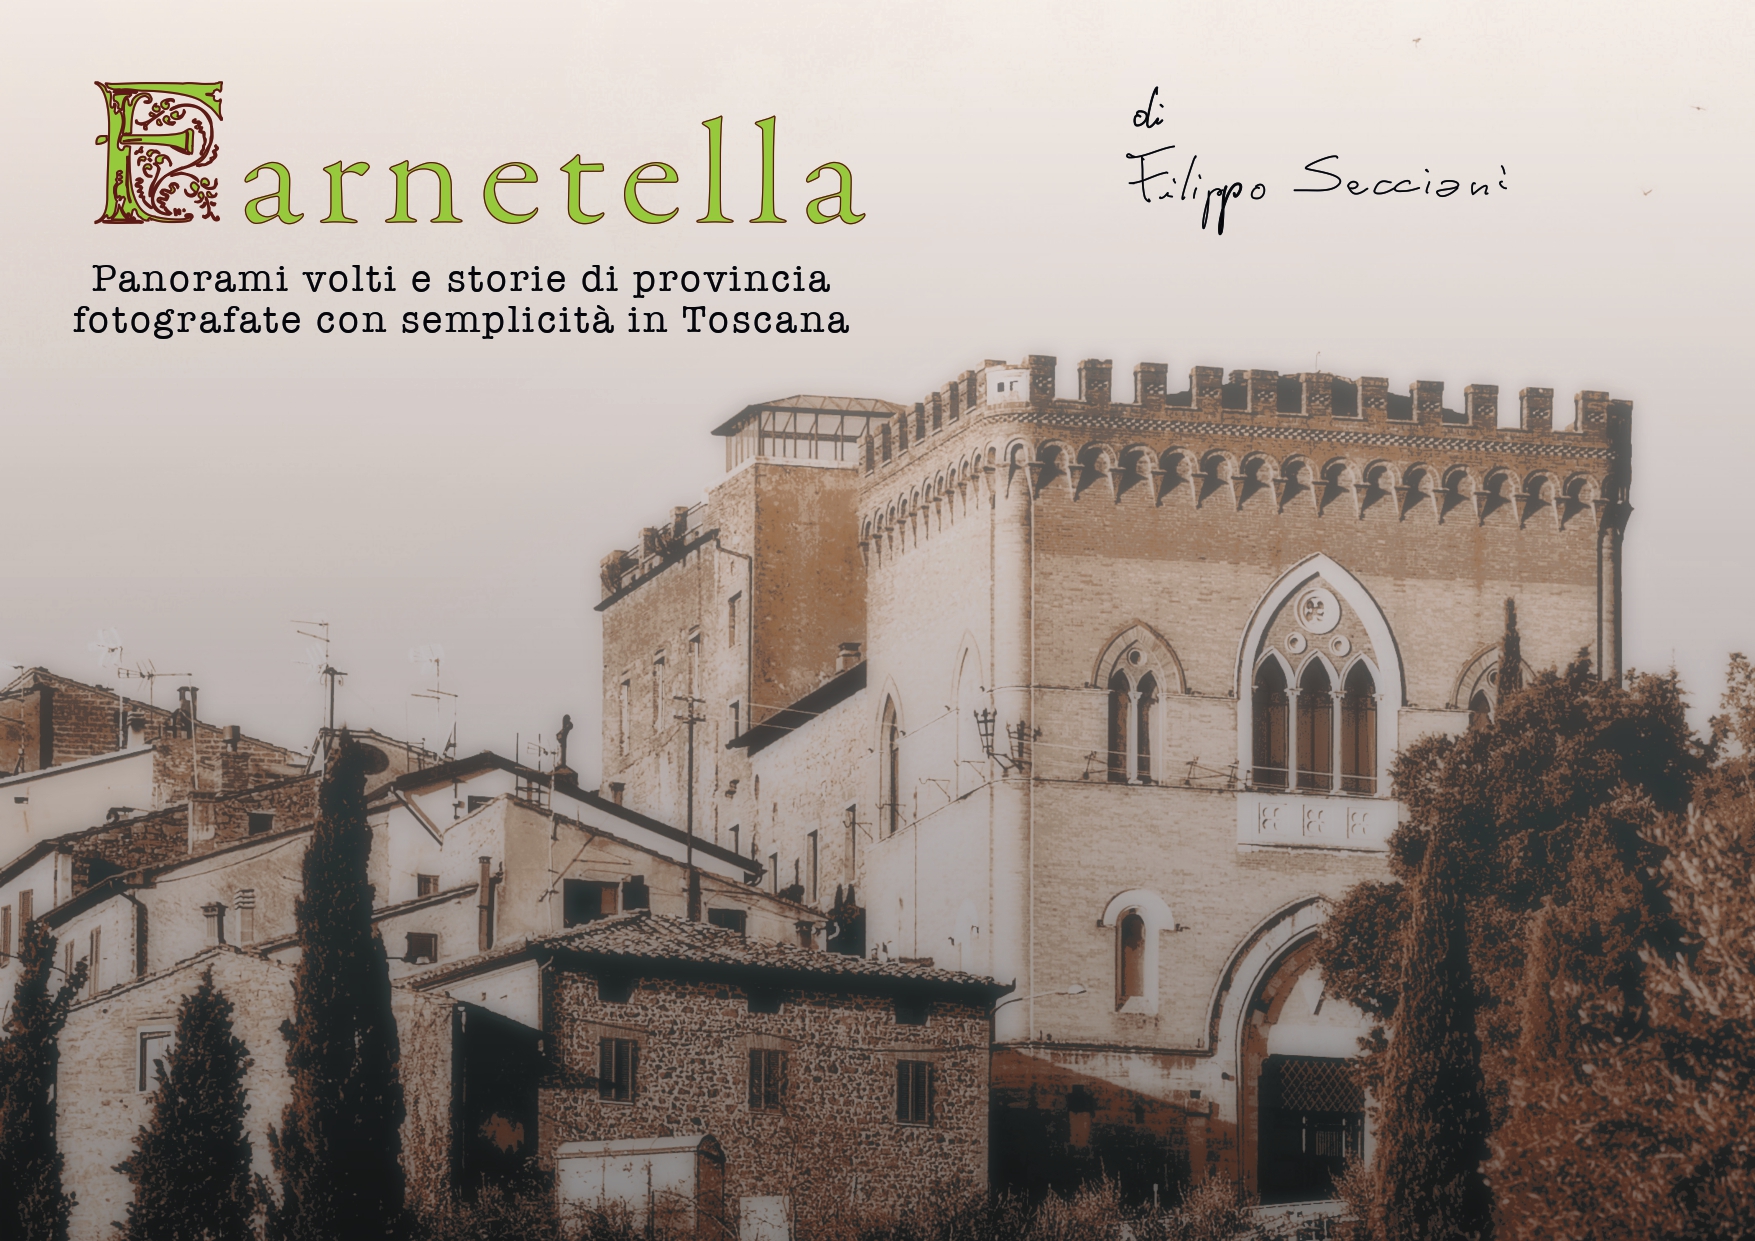 Il libro fotografico di Farnetella – Filippo Secciani